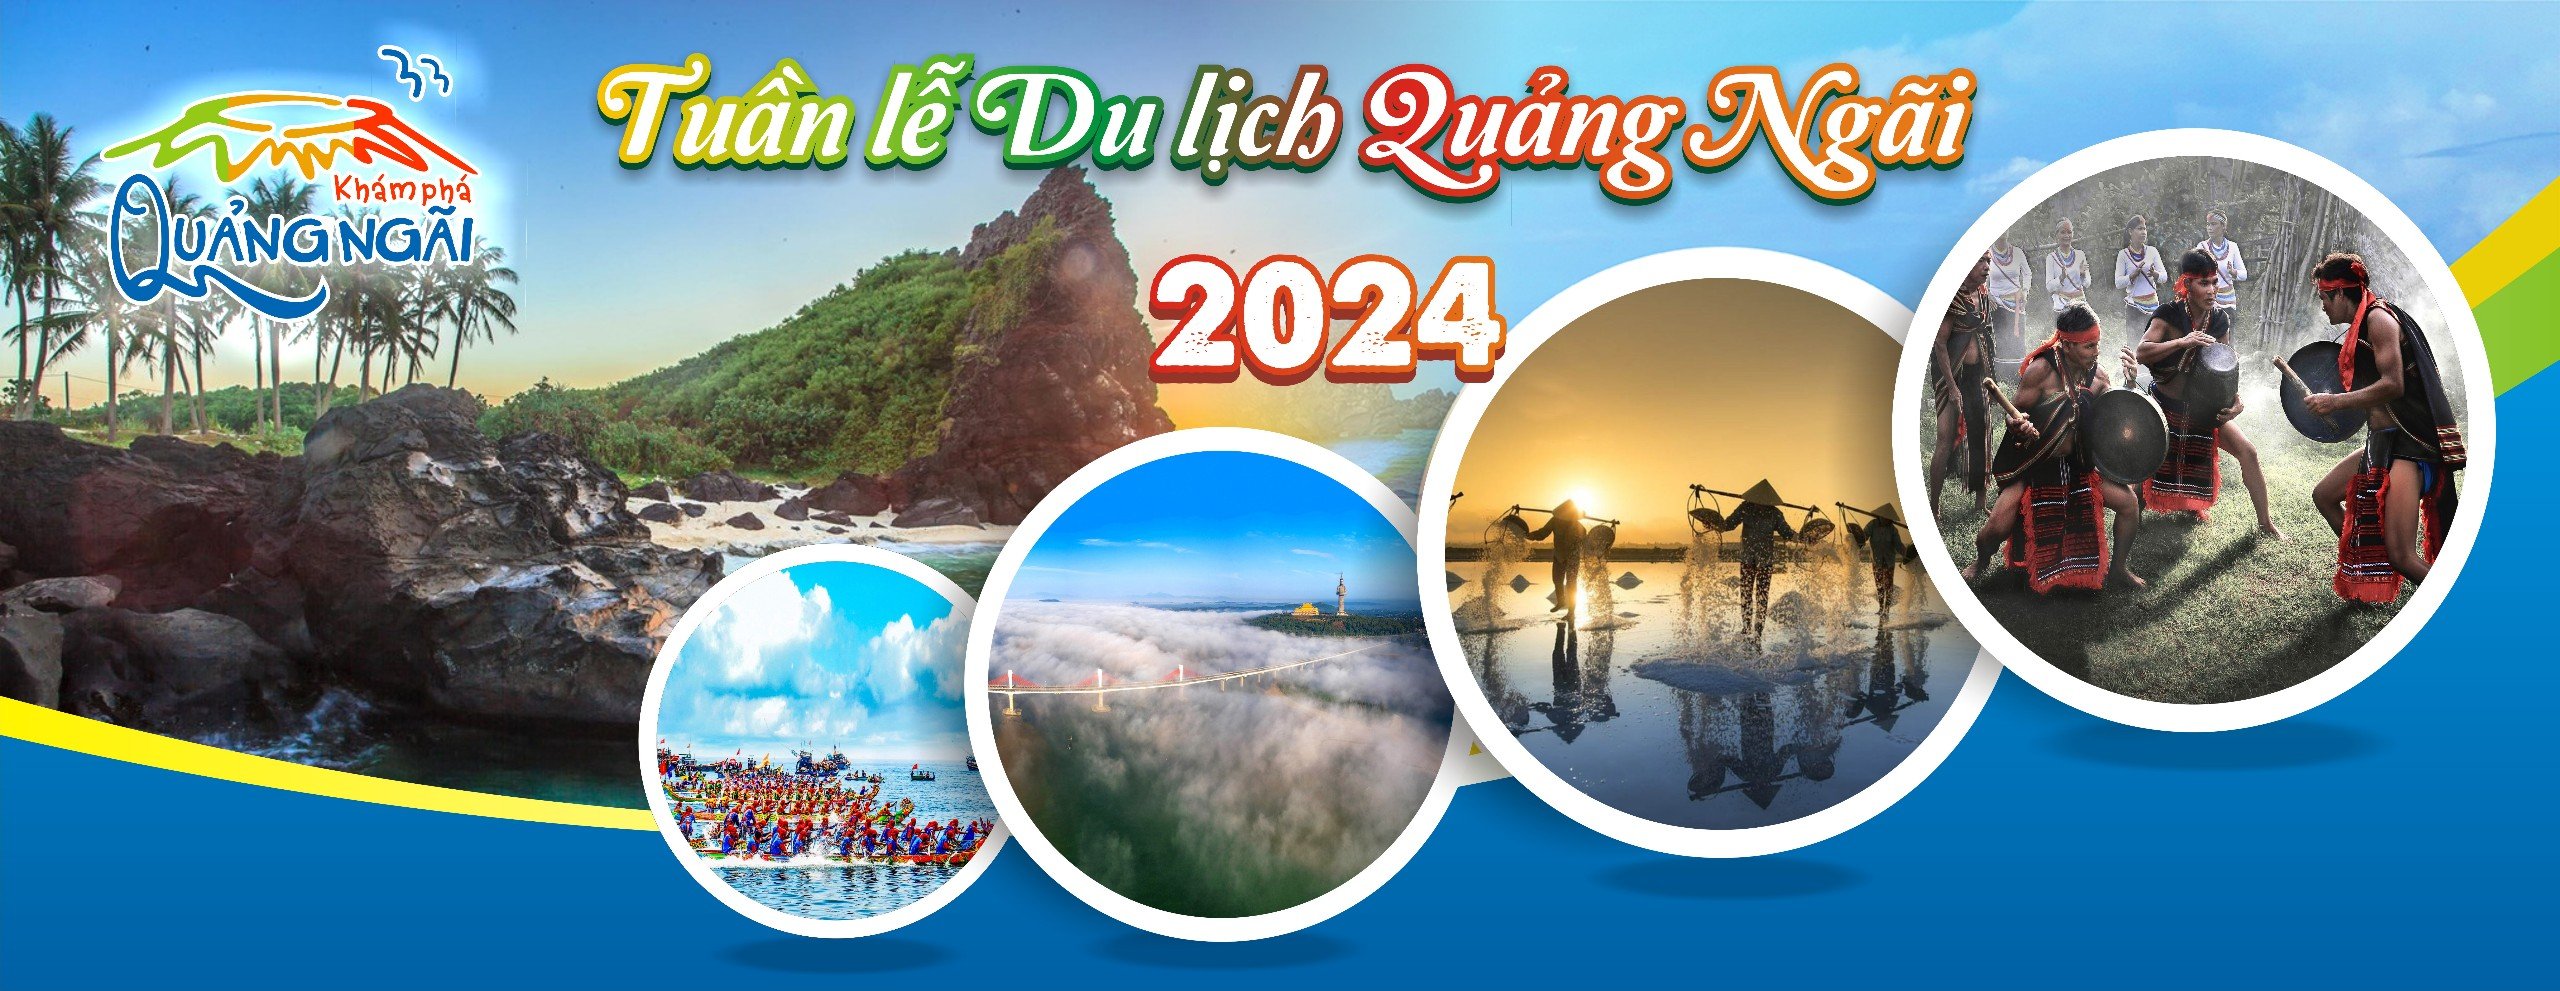 Tuần lễ du lịch Quảng Ngãi năm 2024 sẽ diễn ra từ 22.4 – 5.5